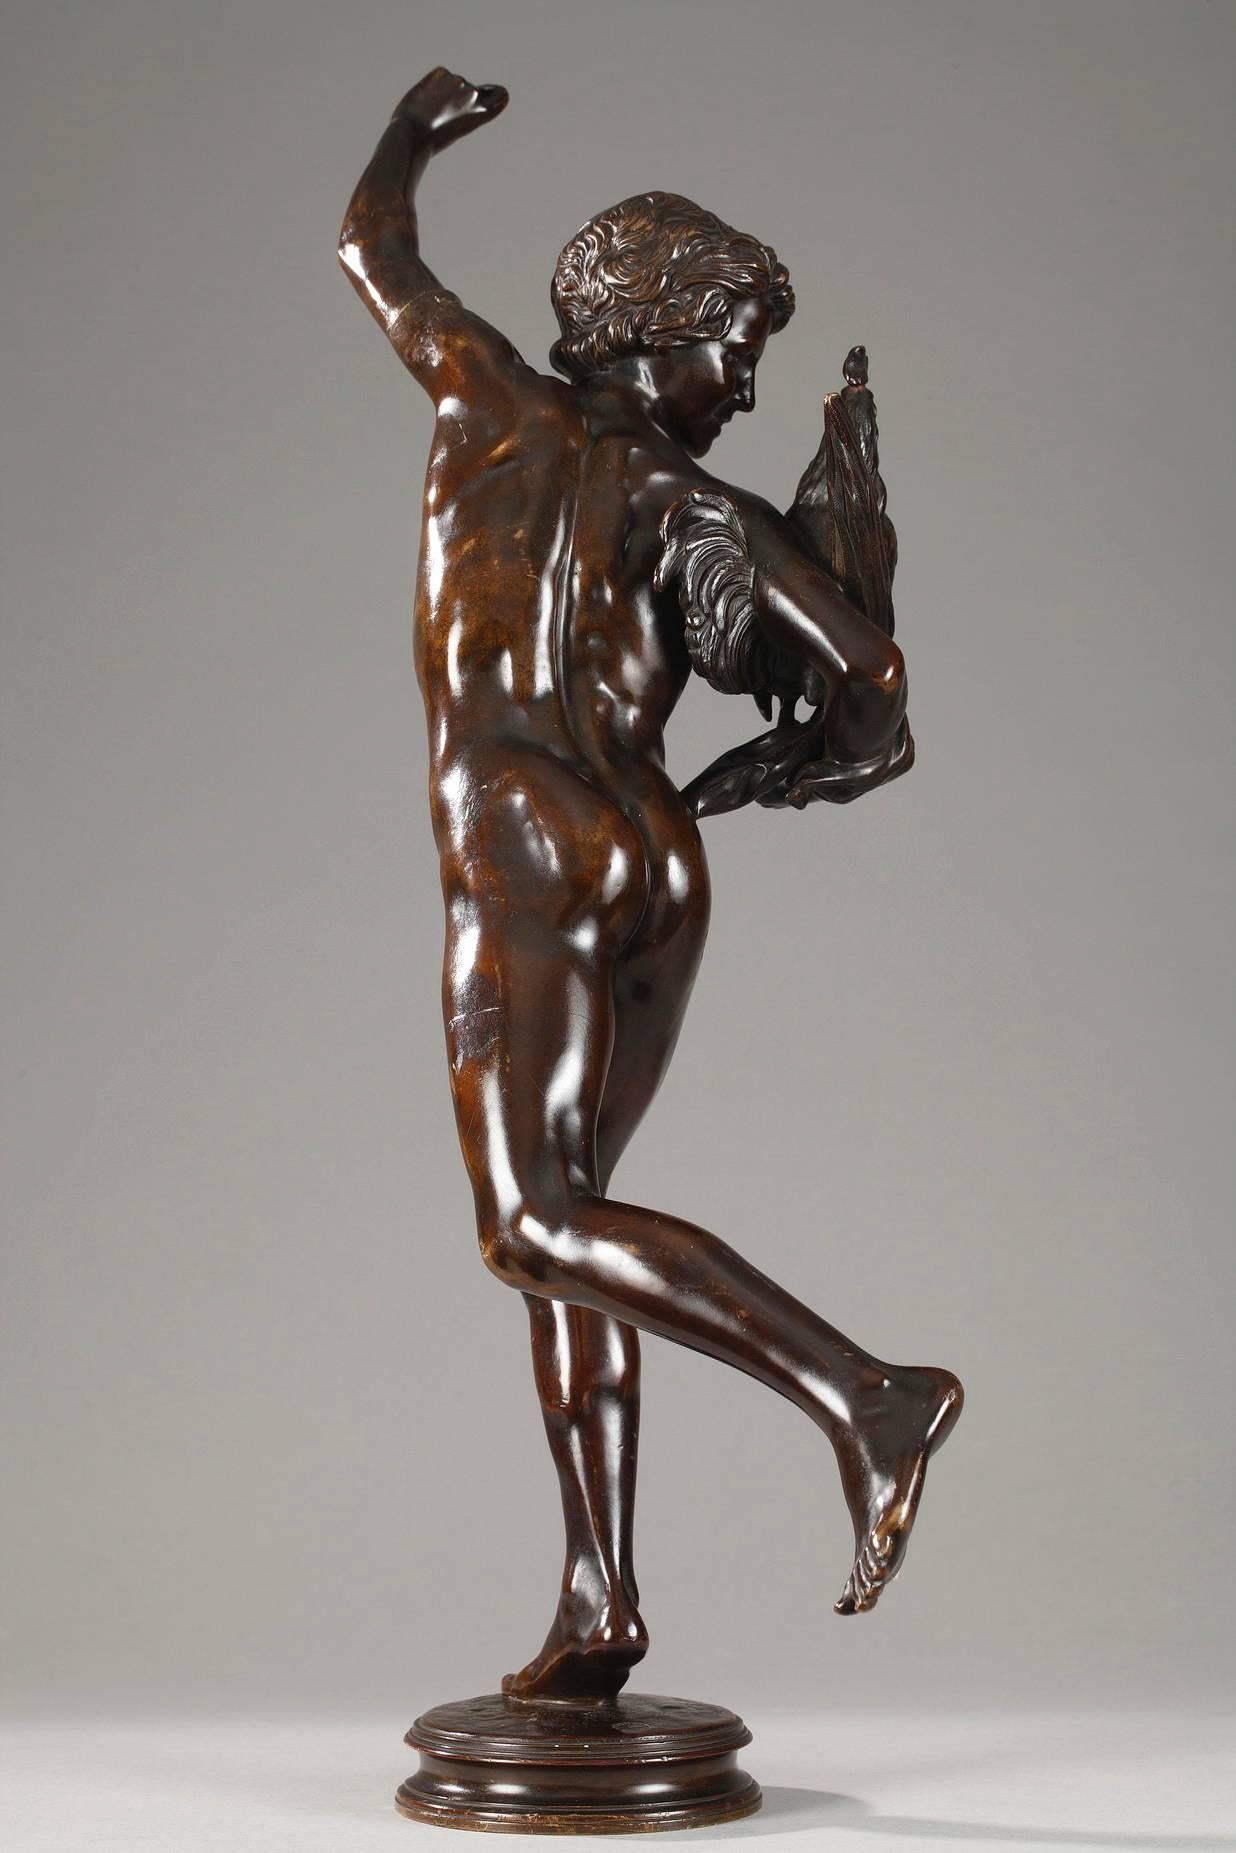 Patinated bronze sculpture titled Le vainqueur du combat de coqs (The Cock Fight Winner) by Alexandre Falguie`re (1831-1900). Signed on the base: A. Falguie`re. Foundry mark: Thie´baut fre`res (Paris, 1885-1894).

 Alexandre Falguie`re was trained